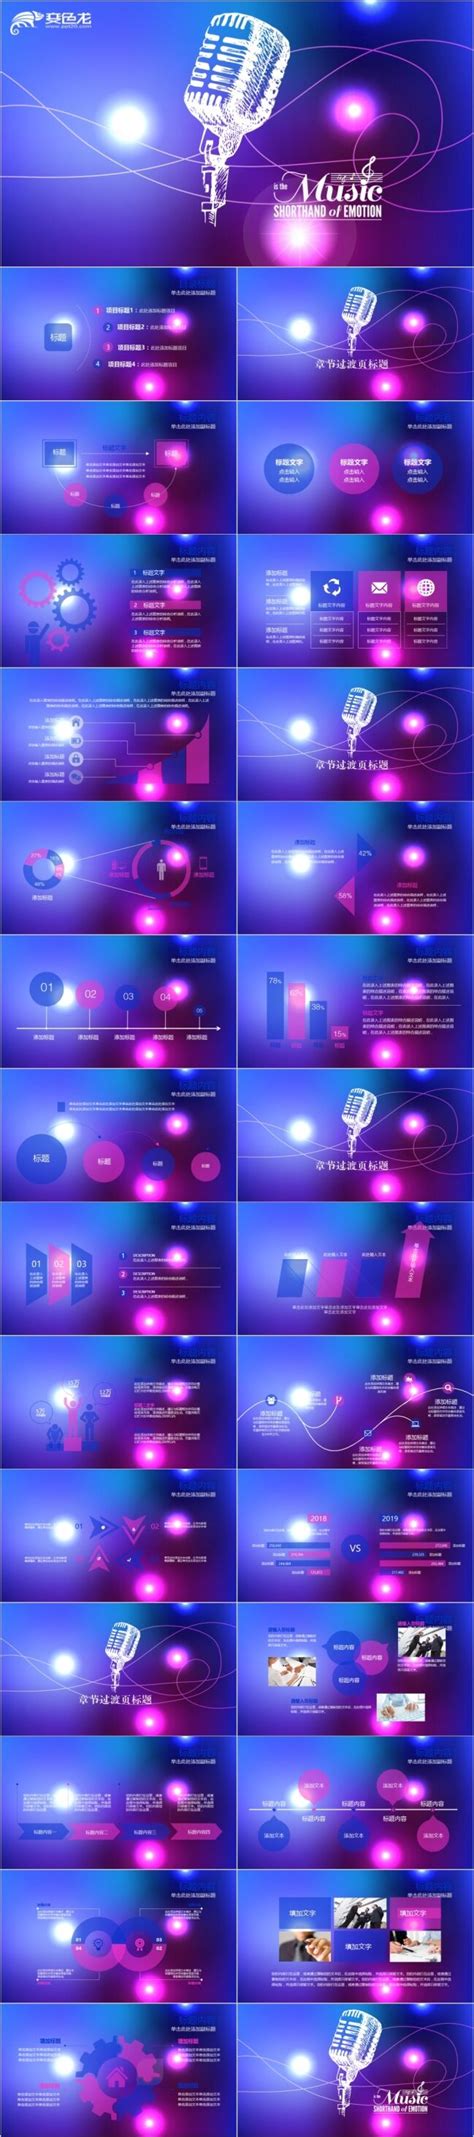 青紫色ファンタジーIOSはジャイアントパンダ属イNNスイートデュポンフィルム方法を巻くテンプレートPPT -PPT私がいプロダクツ ...